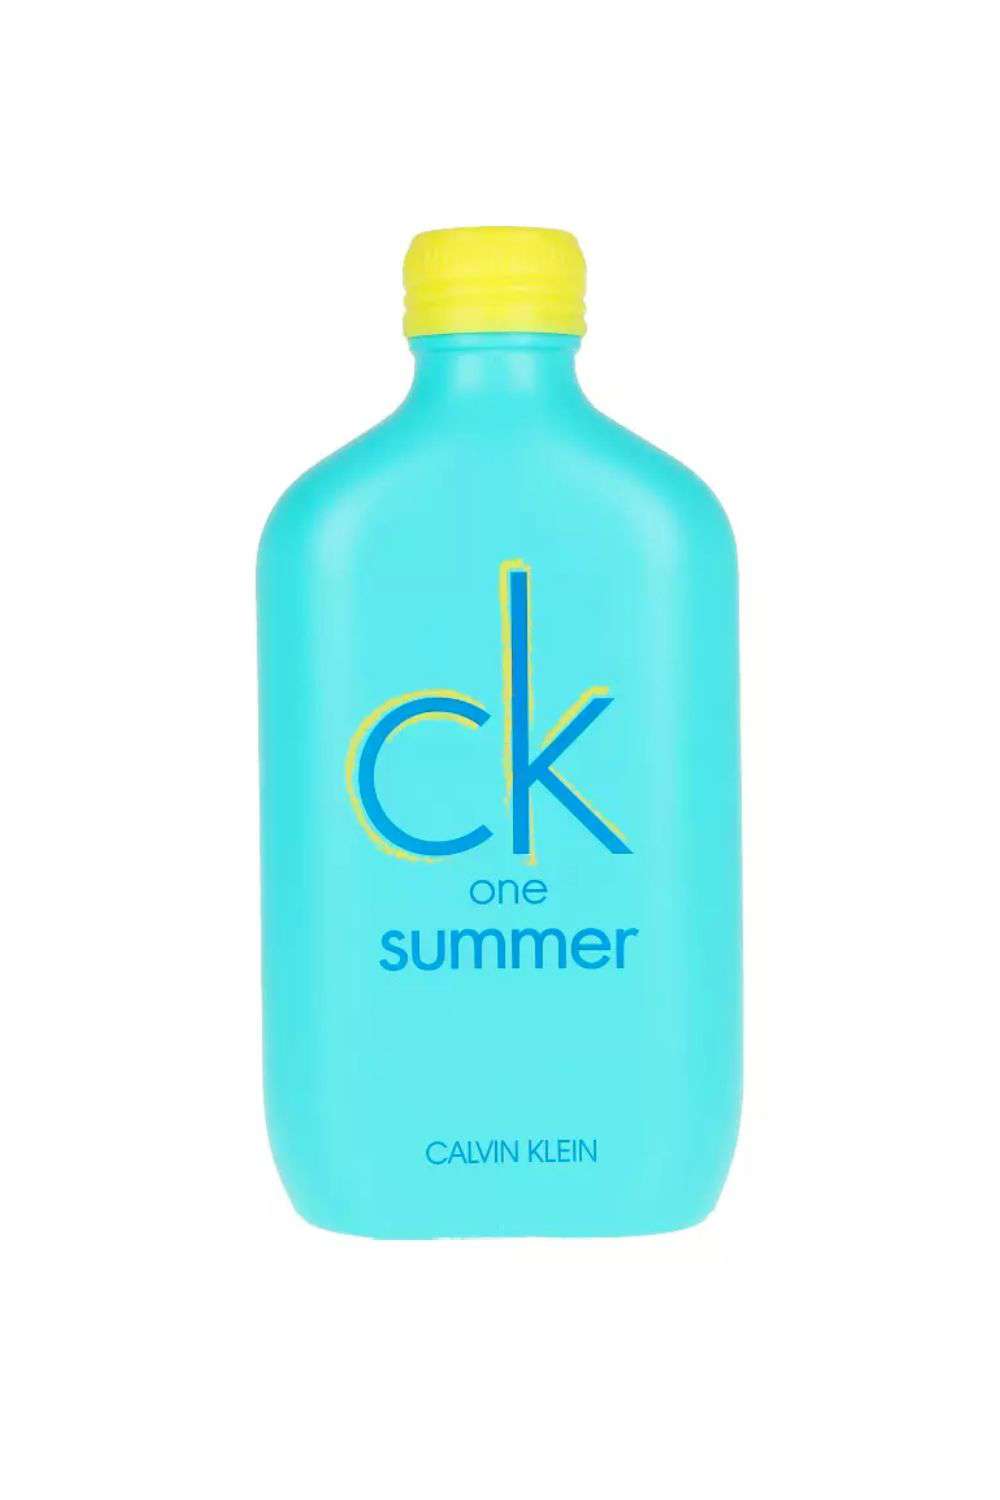 CK ONE SUMMER 2020